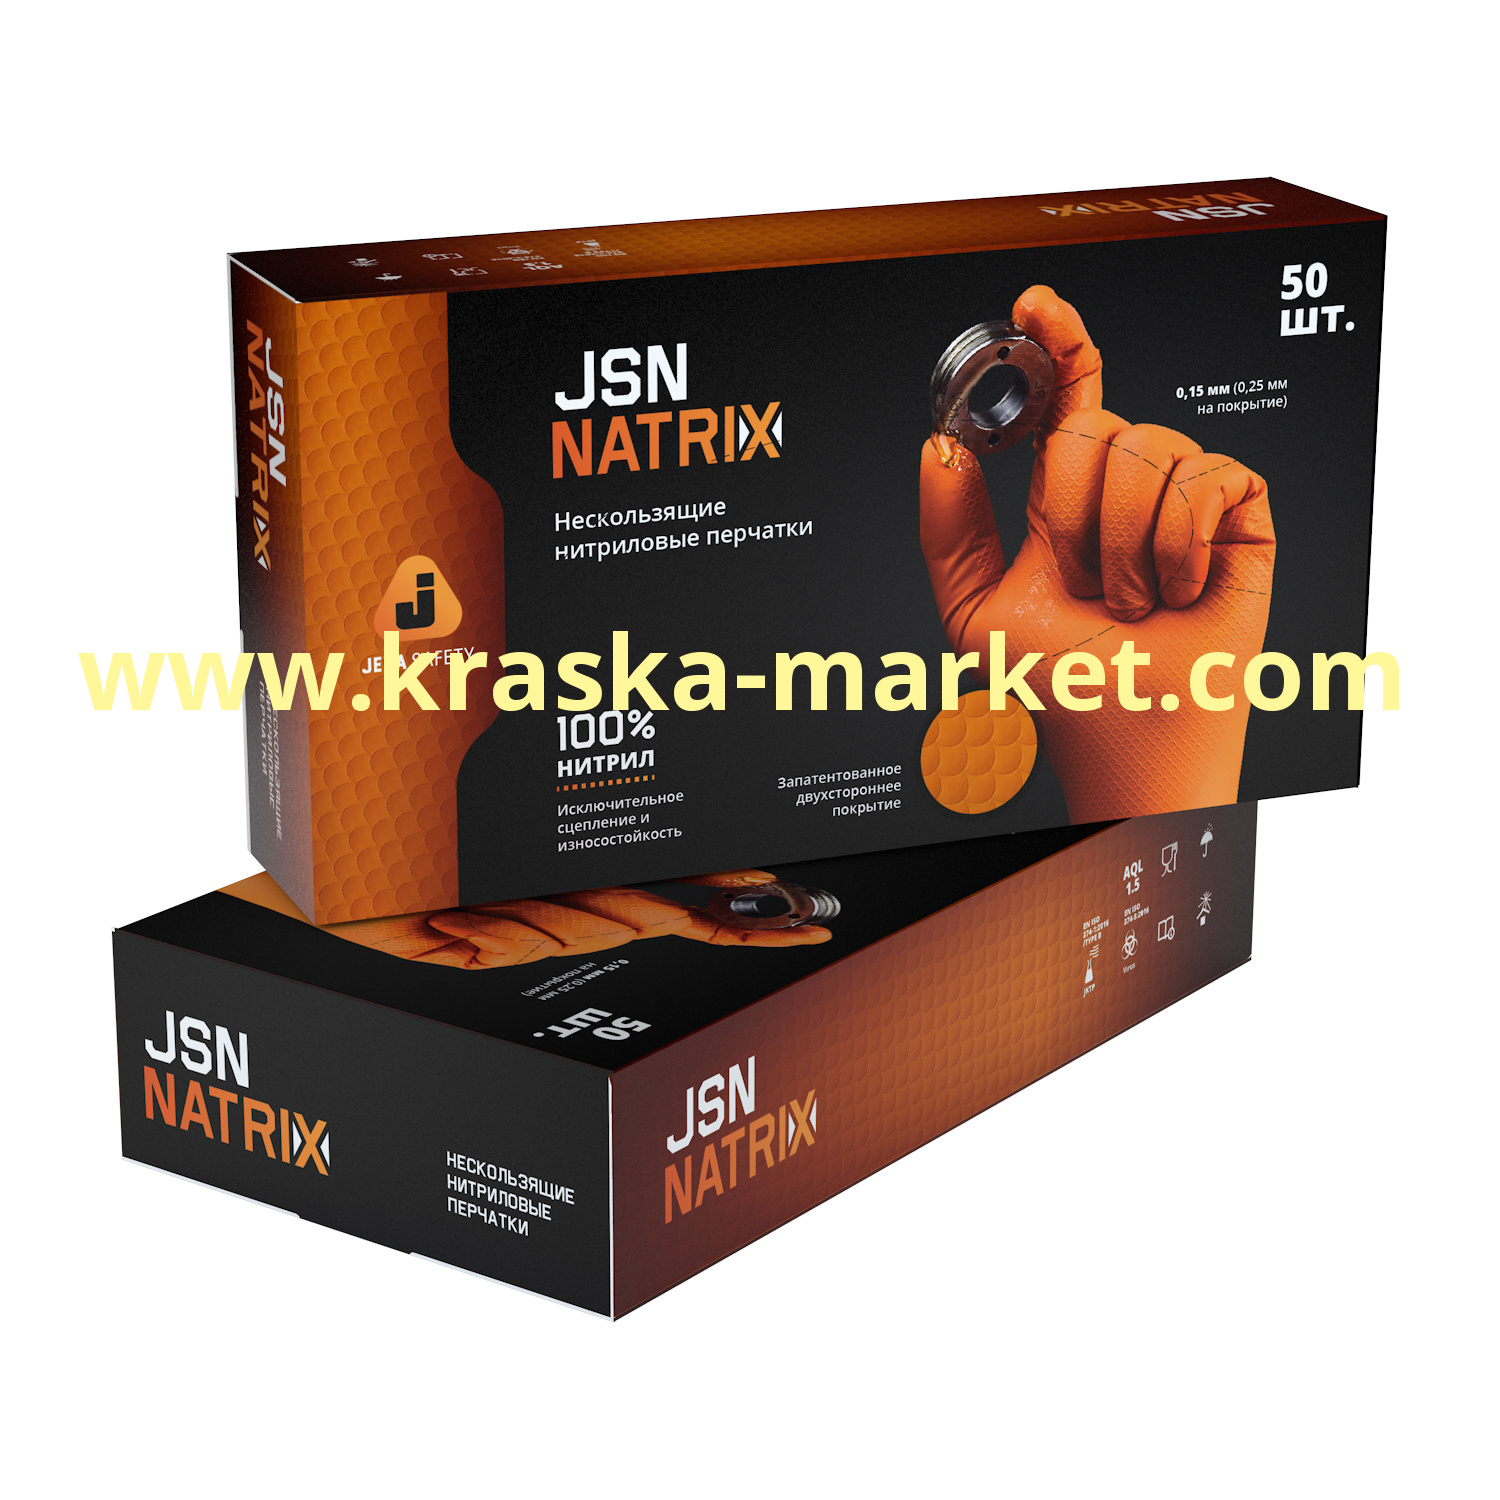 Перчатки нитриловые износостойкие оранжевые для малярных работ JSN NATRIX. Размер: XXL. Упаковка: 50 штук (25 пар). Состав: 100% нитрил. Торговая марка: JetaPro.